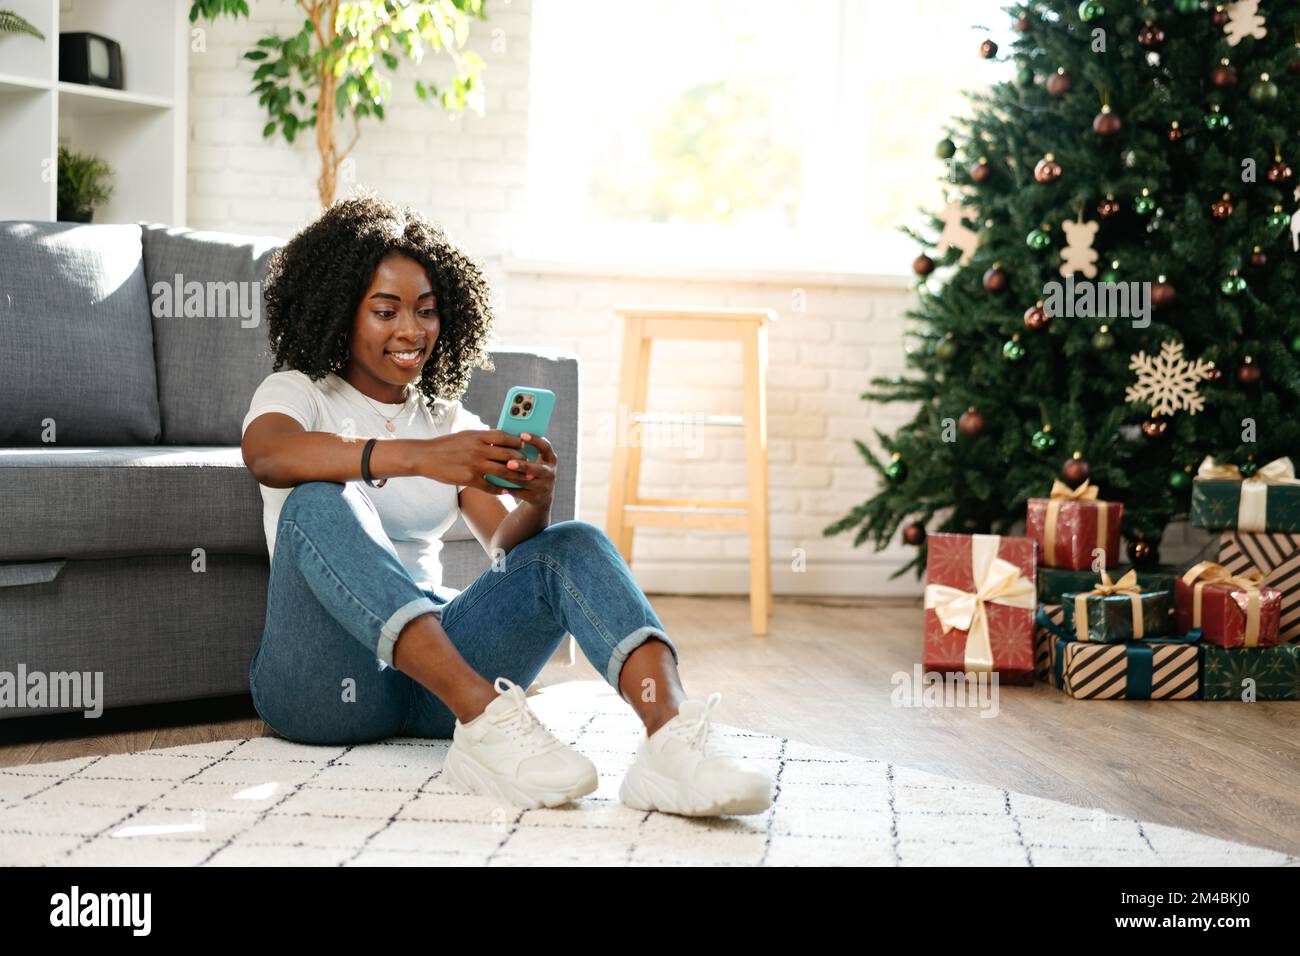 Felice donna nera che usa lo smartphone in una stanza decorata per Natale Foto Stock